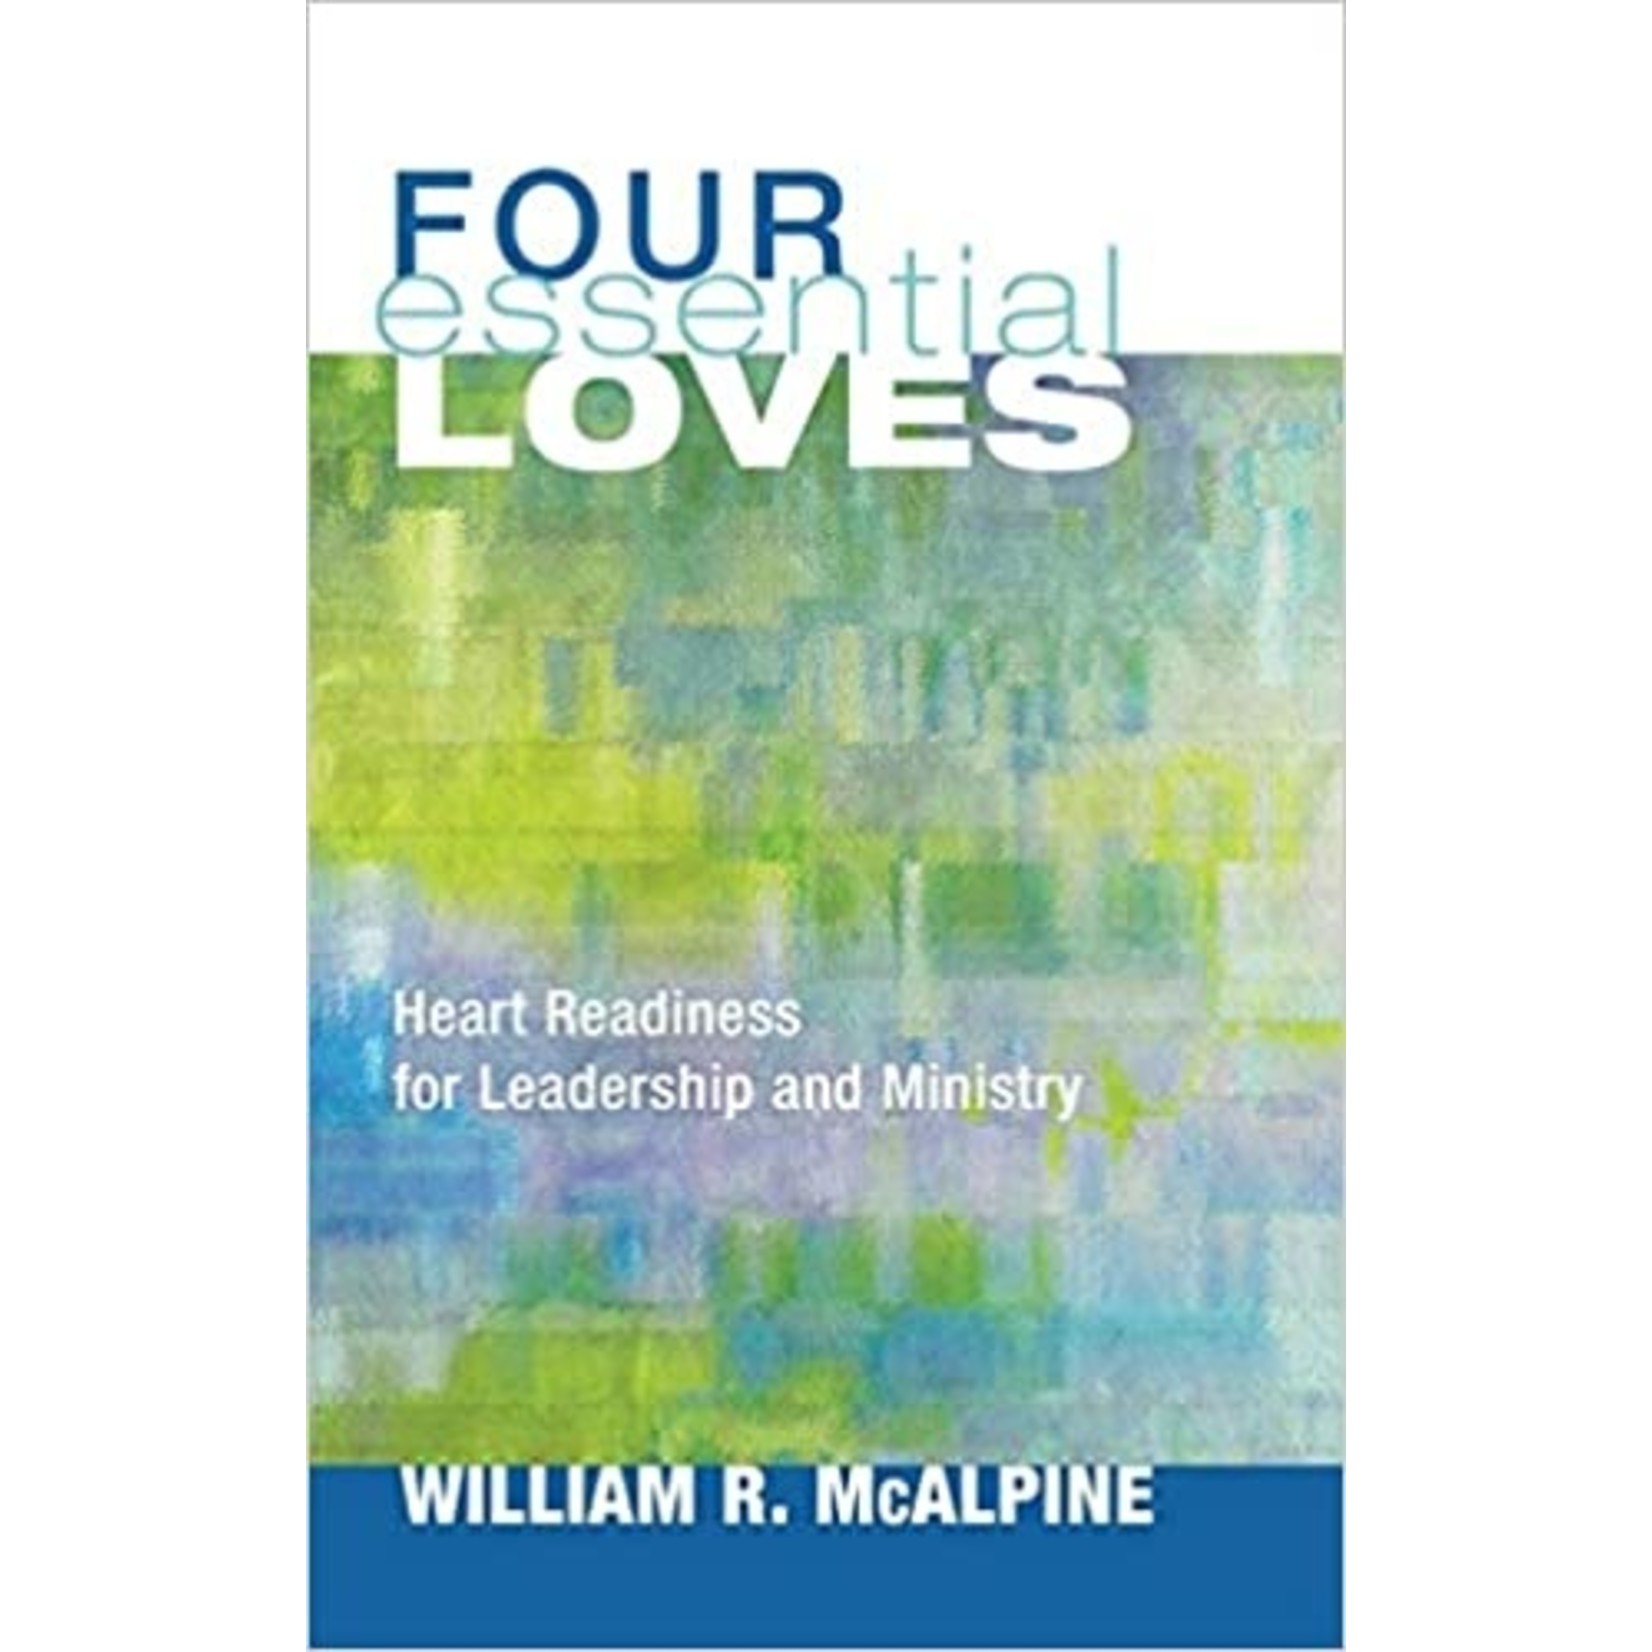 Four Essential Loves - William R. McAlpine